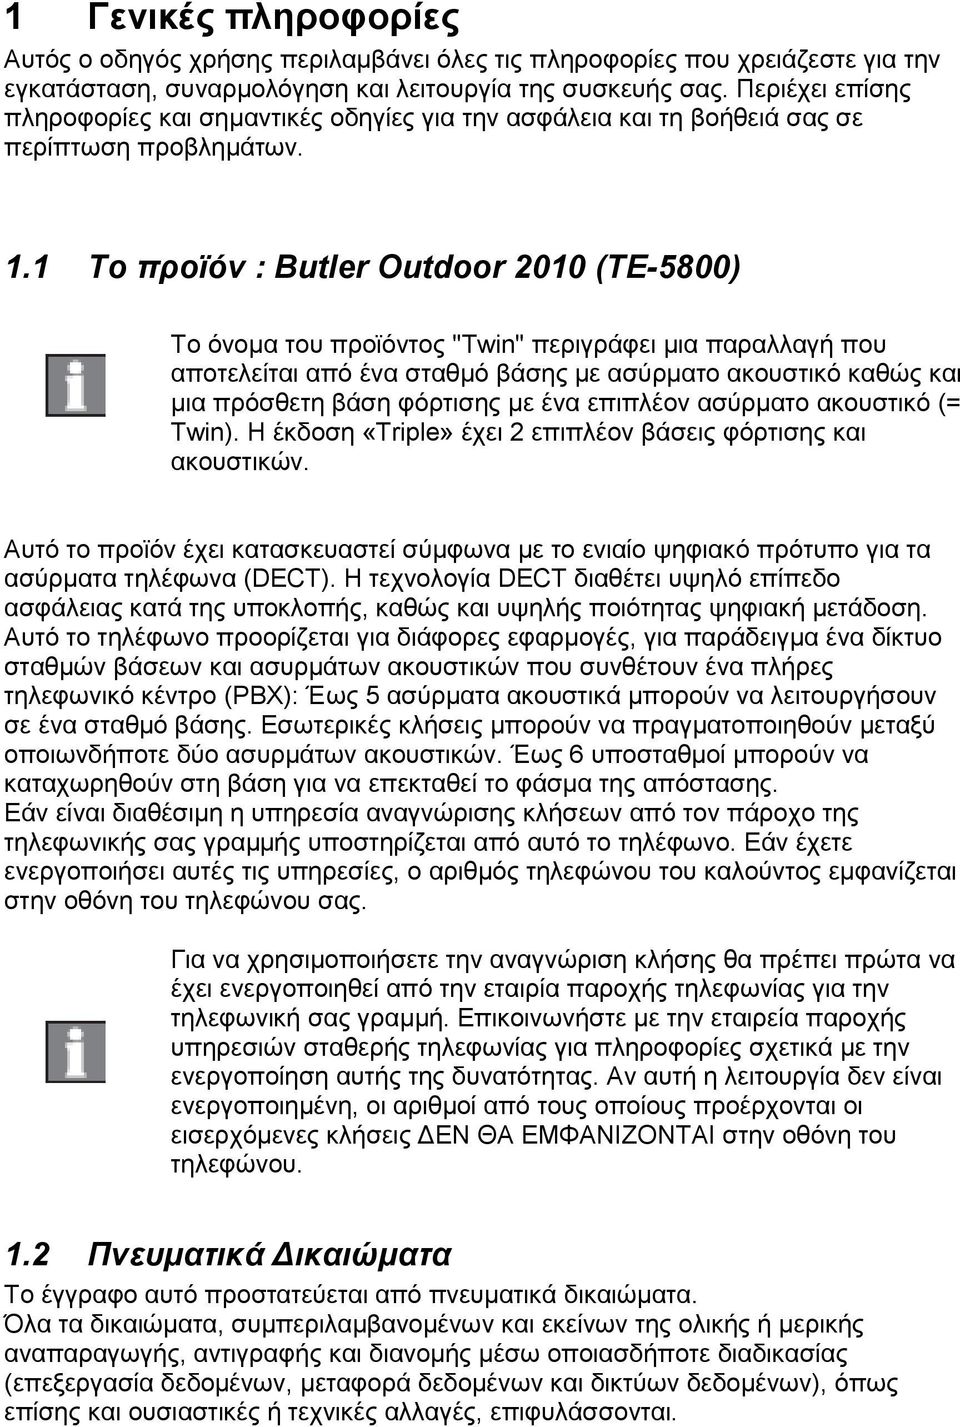 1 Το προϊόν : Butler Outdoor 2010 (ΤΕ-5800) Το όνομα του προϊόντος "Twin" περιγράφει μια παραλλαγή που αποτελείται από ένα σταθμό βάσης με ασύρματο ακουστικό καθώς και μια πρόσθετη βάση φόρτισης με